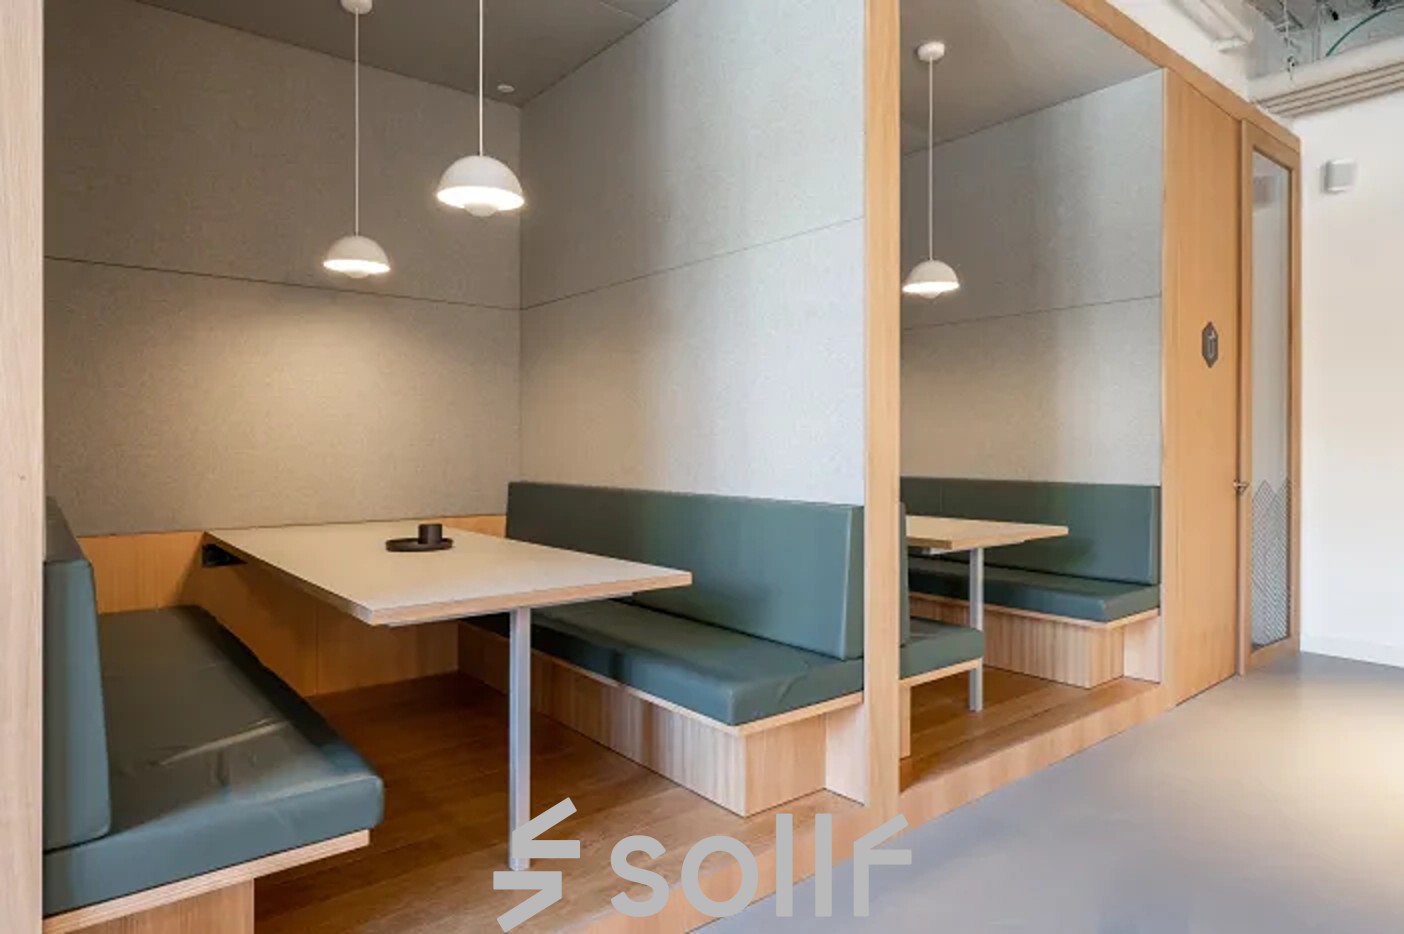 Moderne Büroraum mieten in Genf Les Genets, Rue du Pré-de-la-Bichette 1, mit Holzmöbeln und komfortabler Sitzbank.